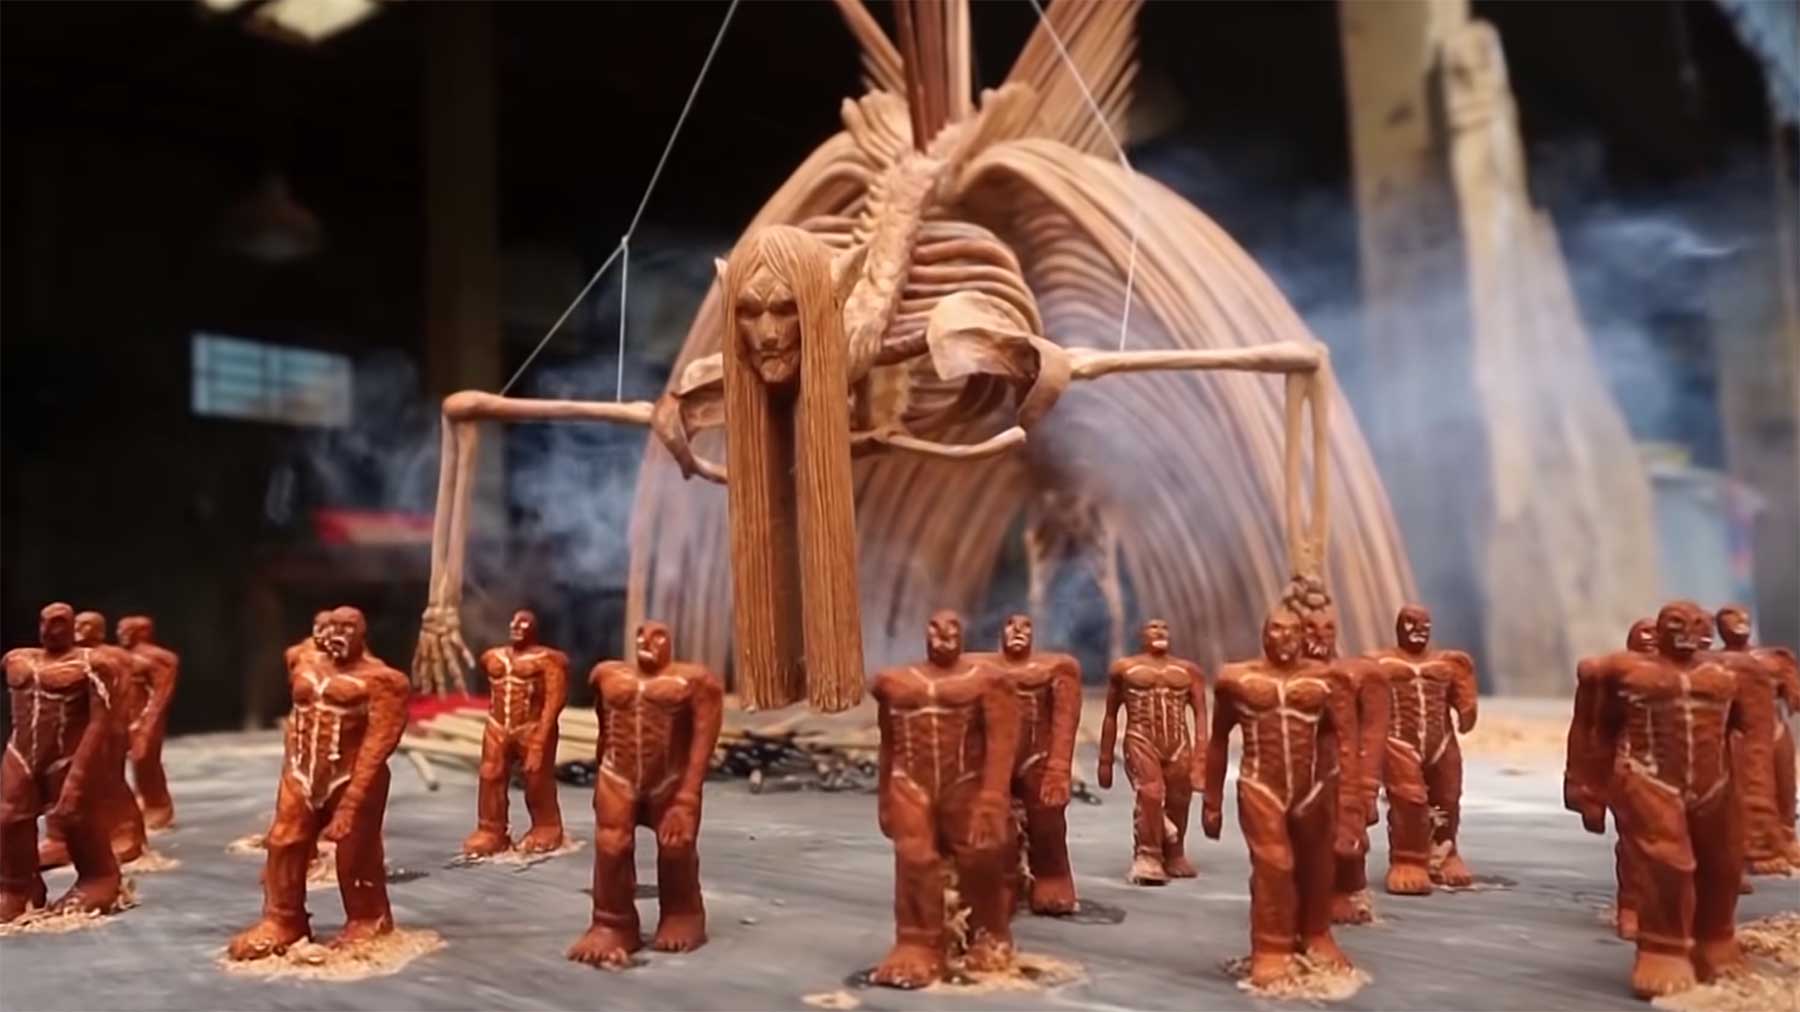 Entstehung einer "Attack on Titan“-Holzskulptur attack-on-titan-holzfigur 